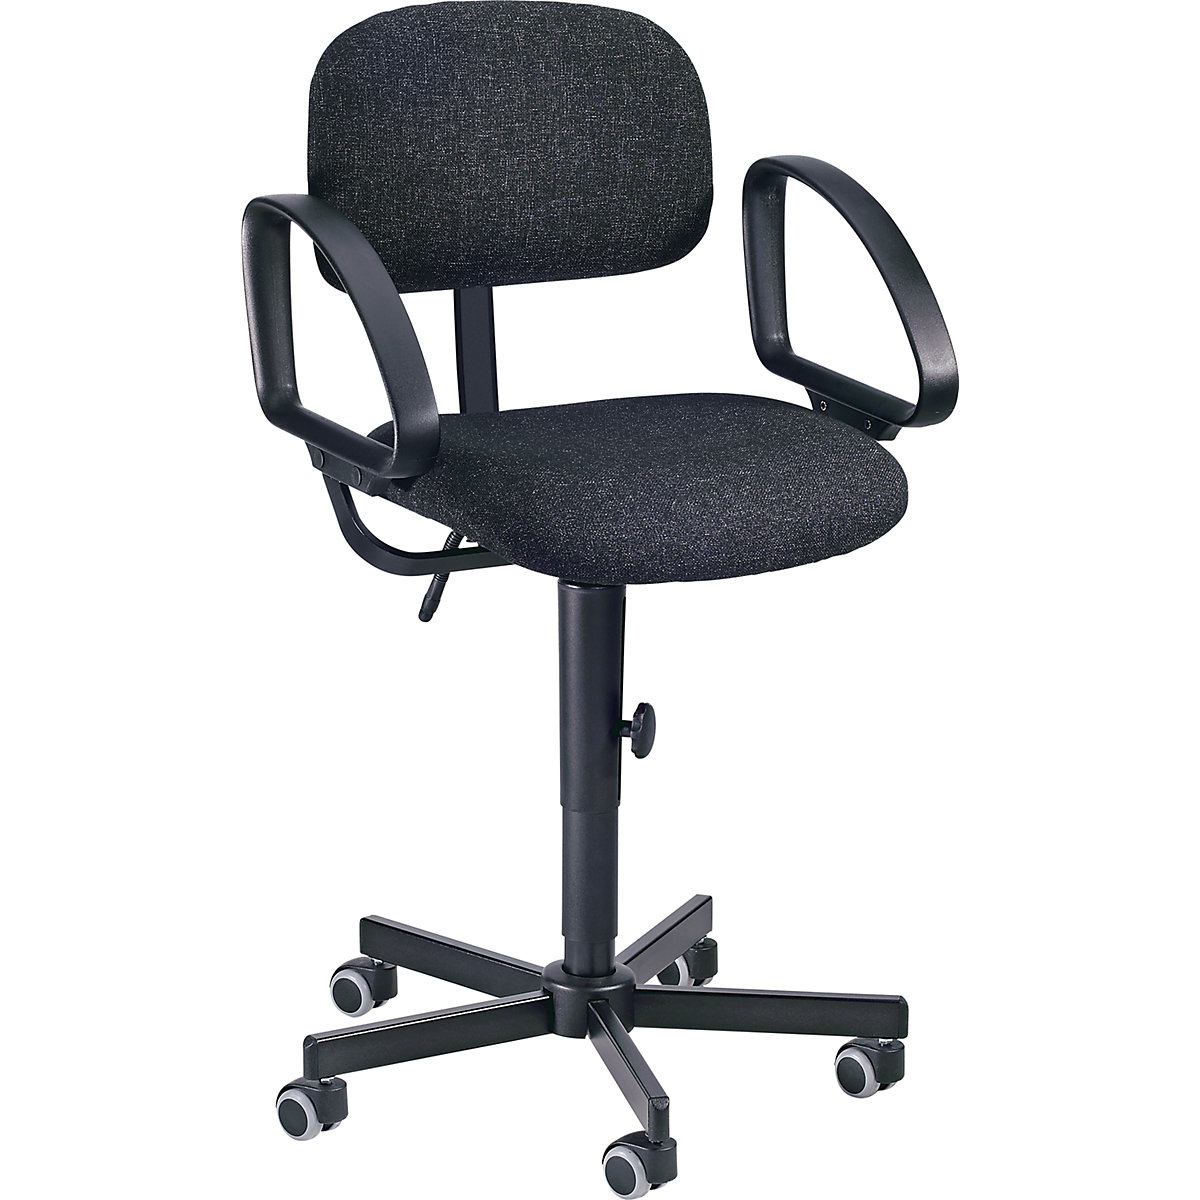 Okretna radna stolica, s mogućnošću namještanja visine pomoću klina – meychair (Prikaz proizvoda 3)-2